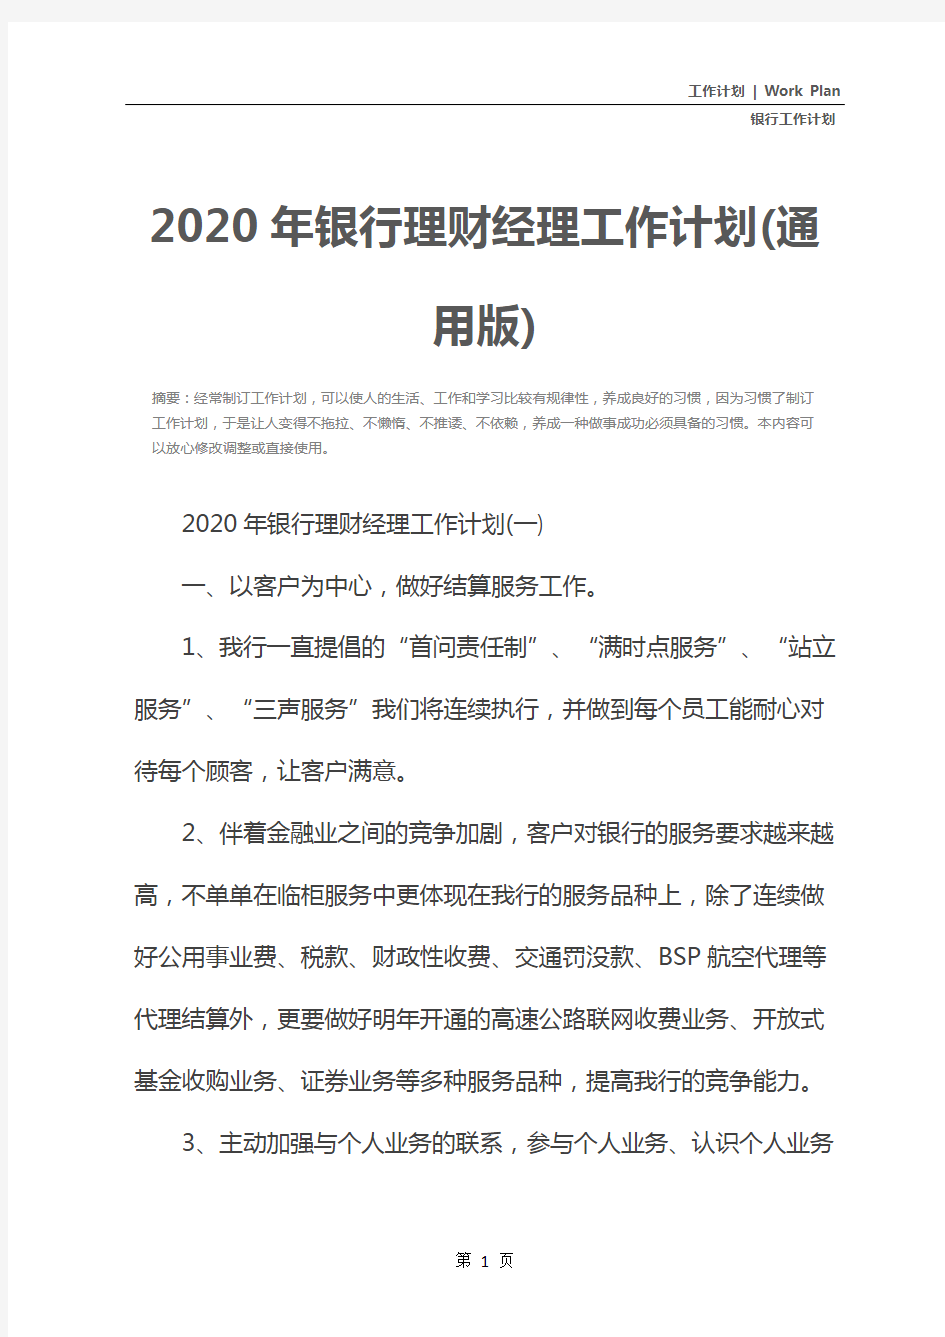 2020年银行理财经理工作计划(通用版)